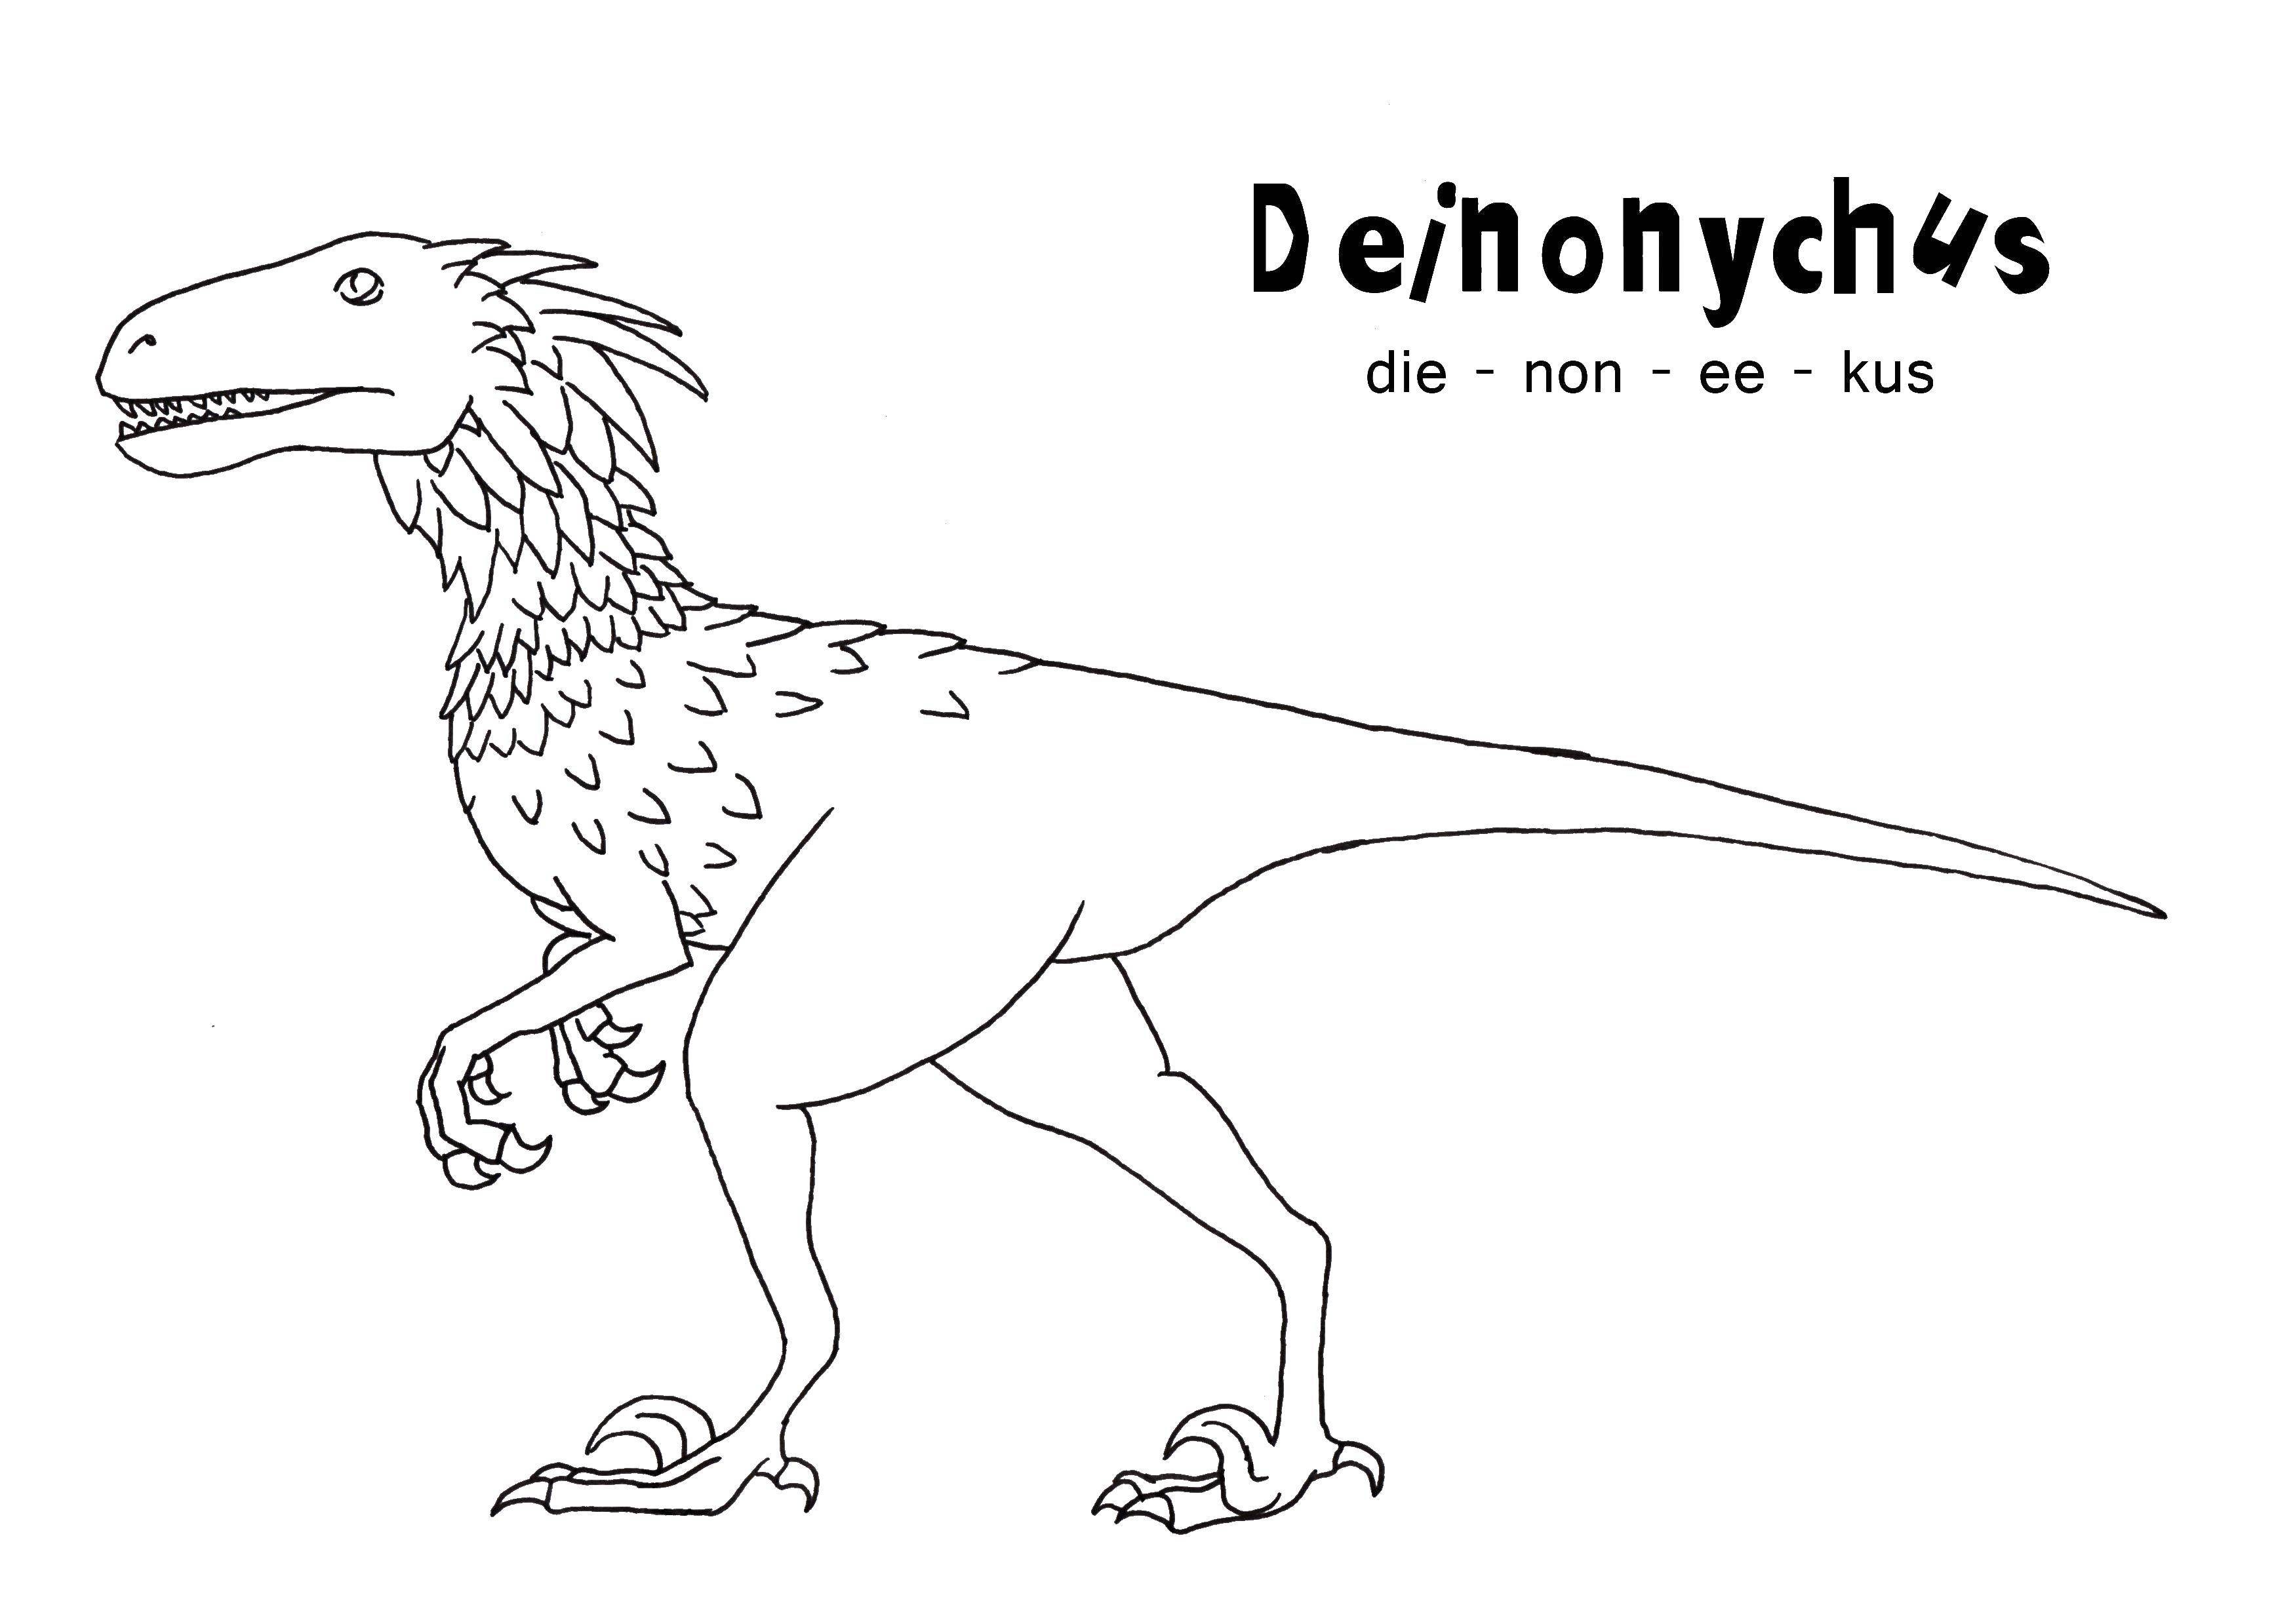 Coloring Deinonychus. Category dinosaur. Tags:  Dinosaurs.